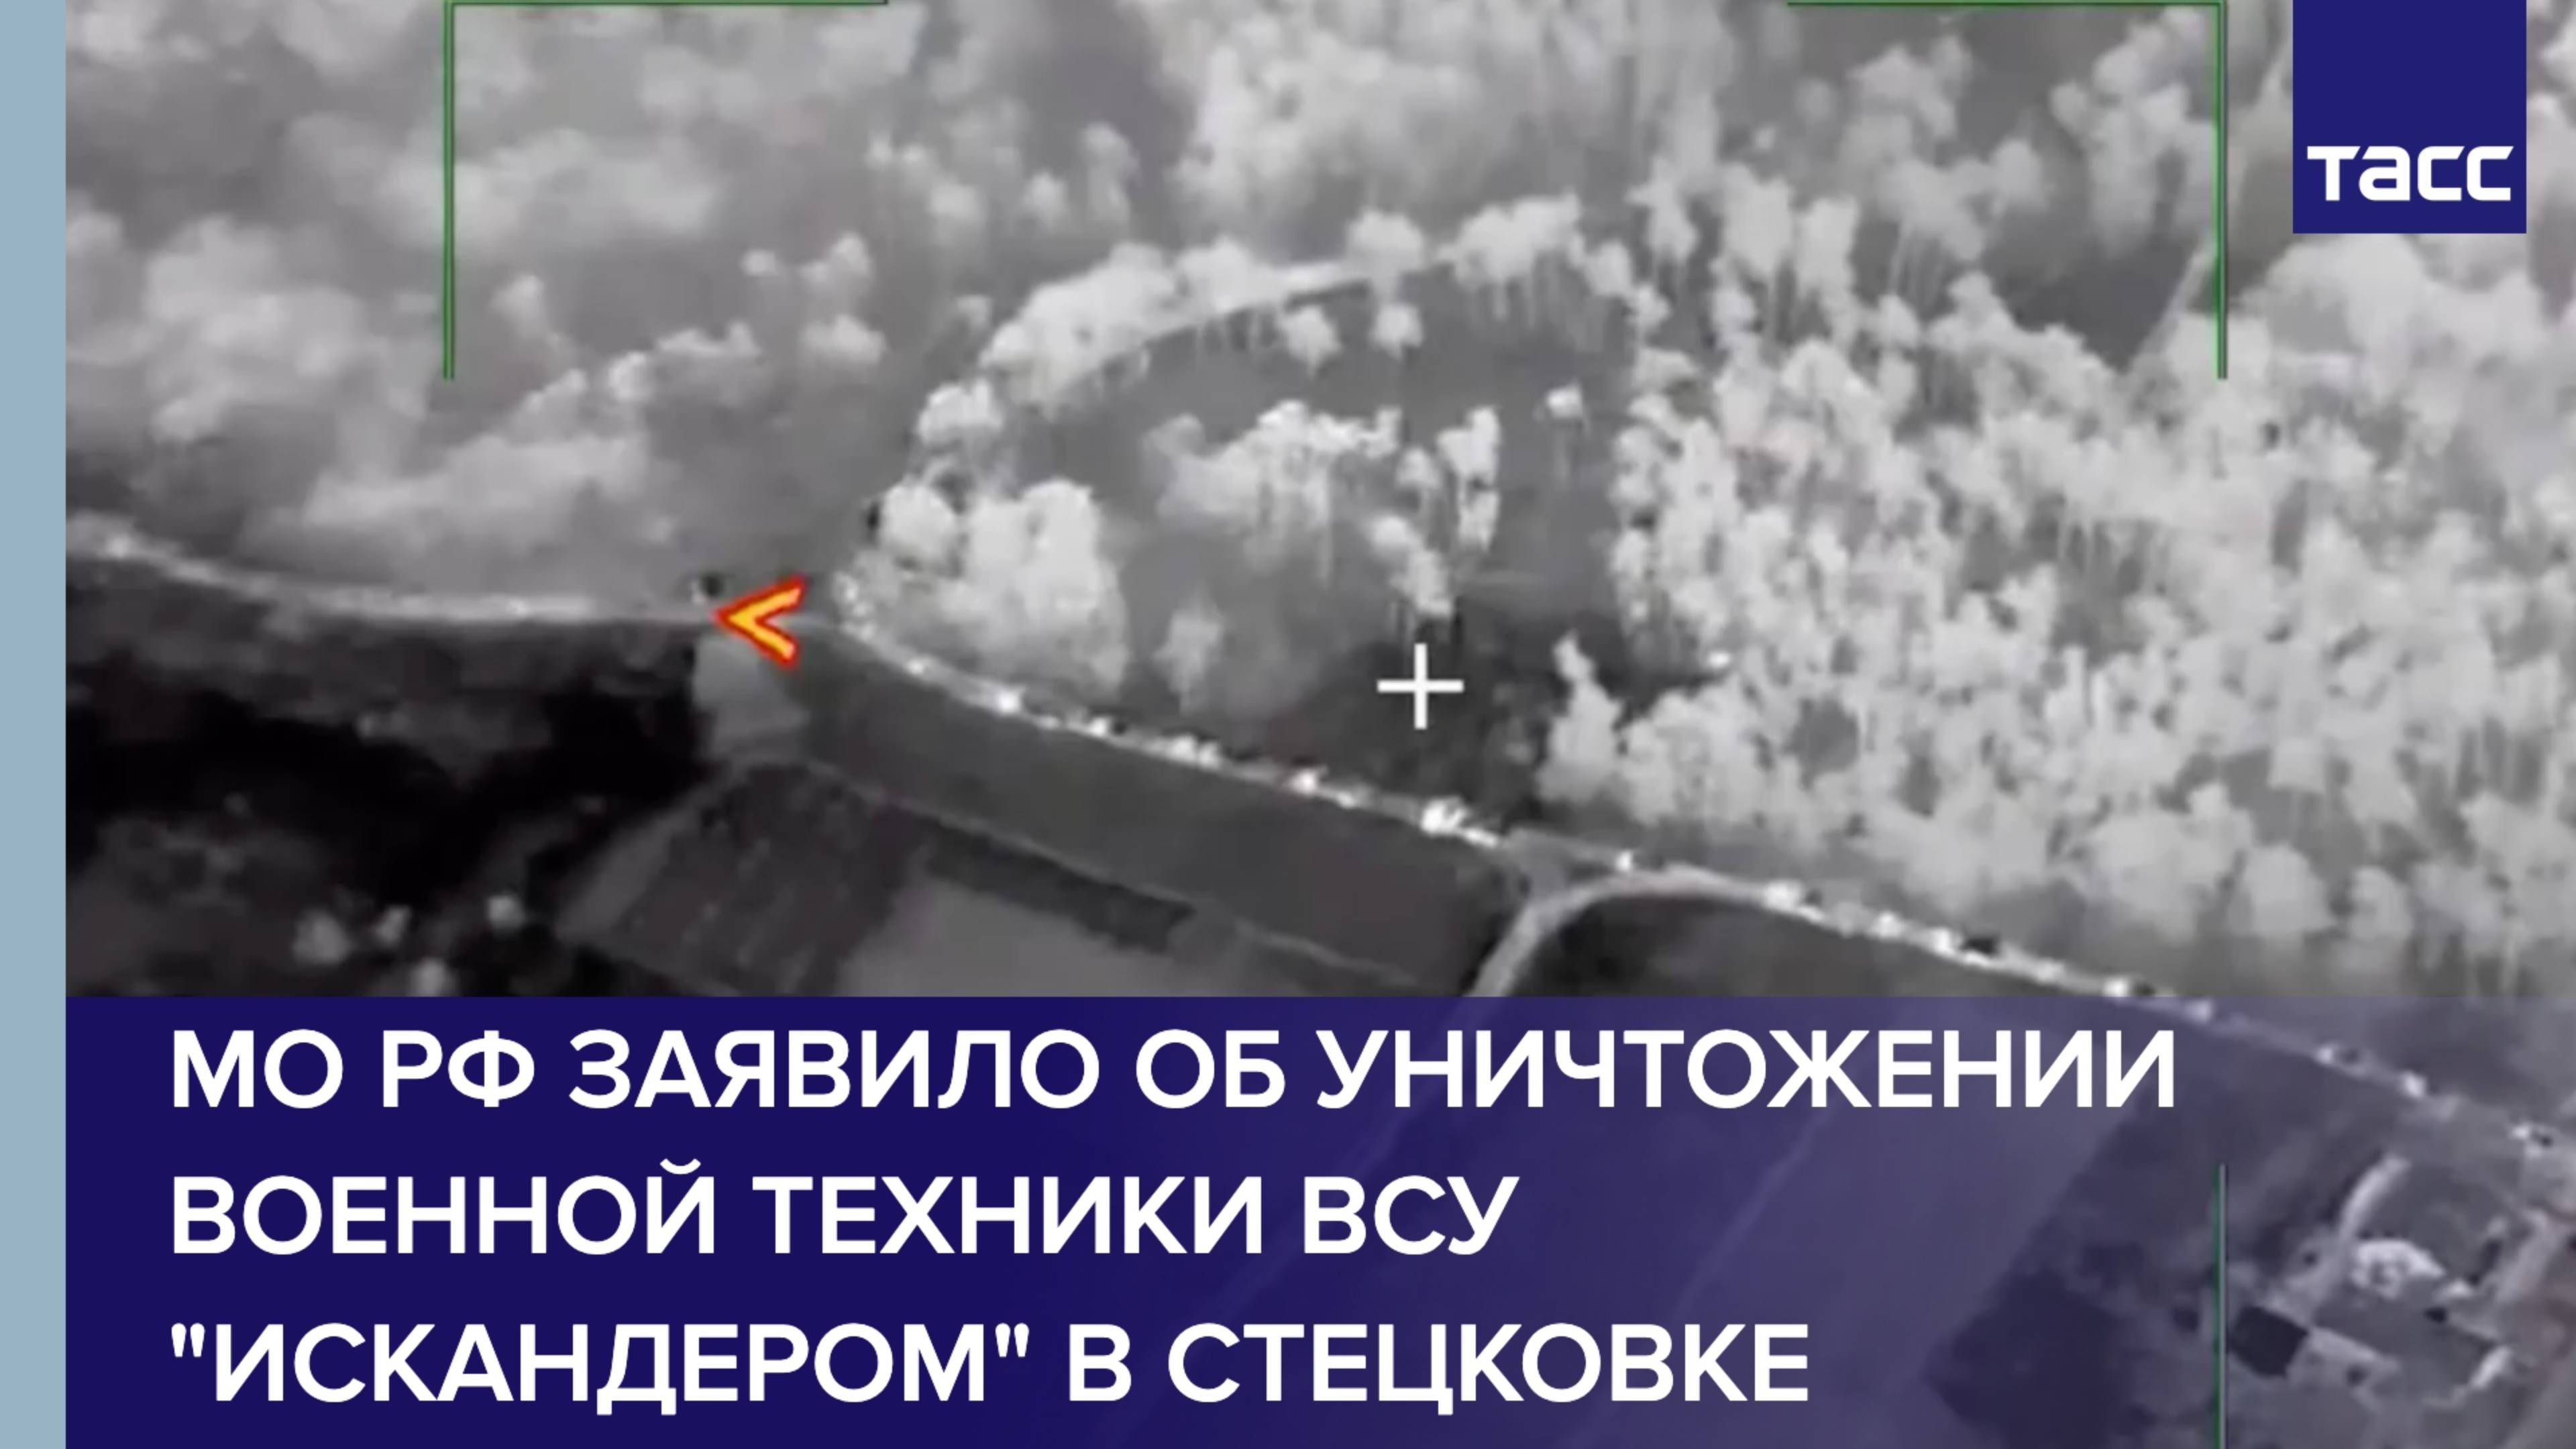 МО РФ заявило об уничтожении военной техники ВСУ "Искандером" в Стецковке